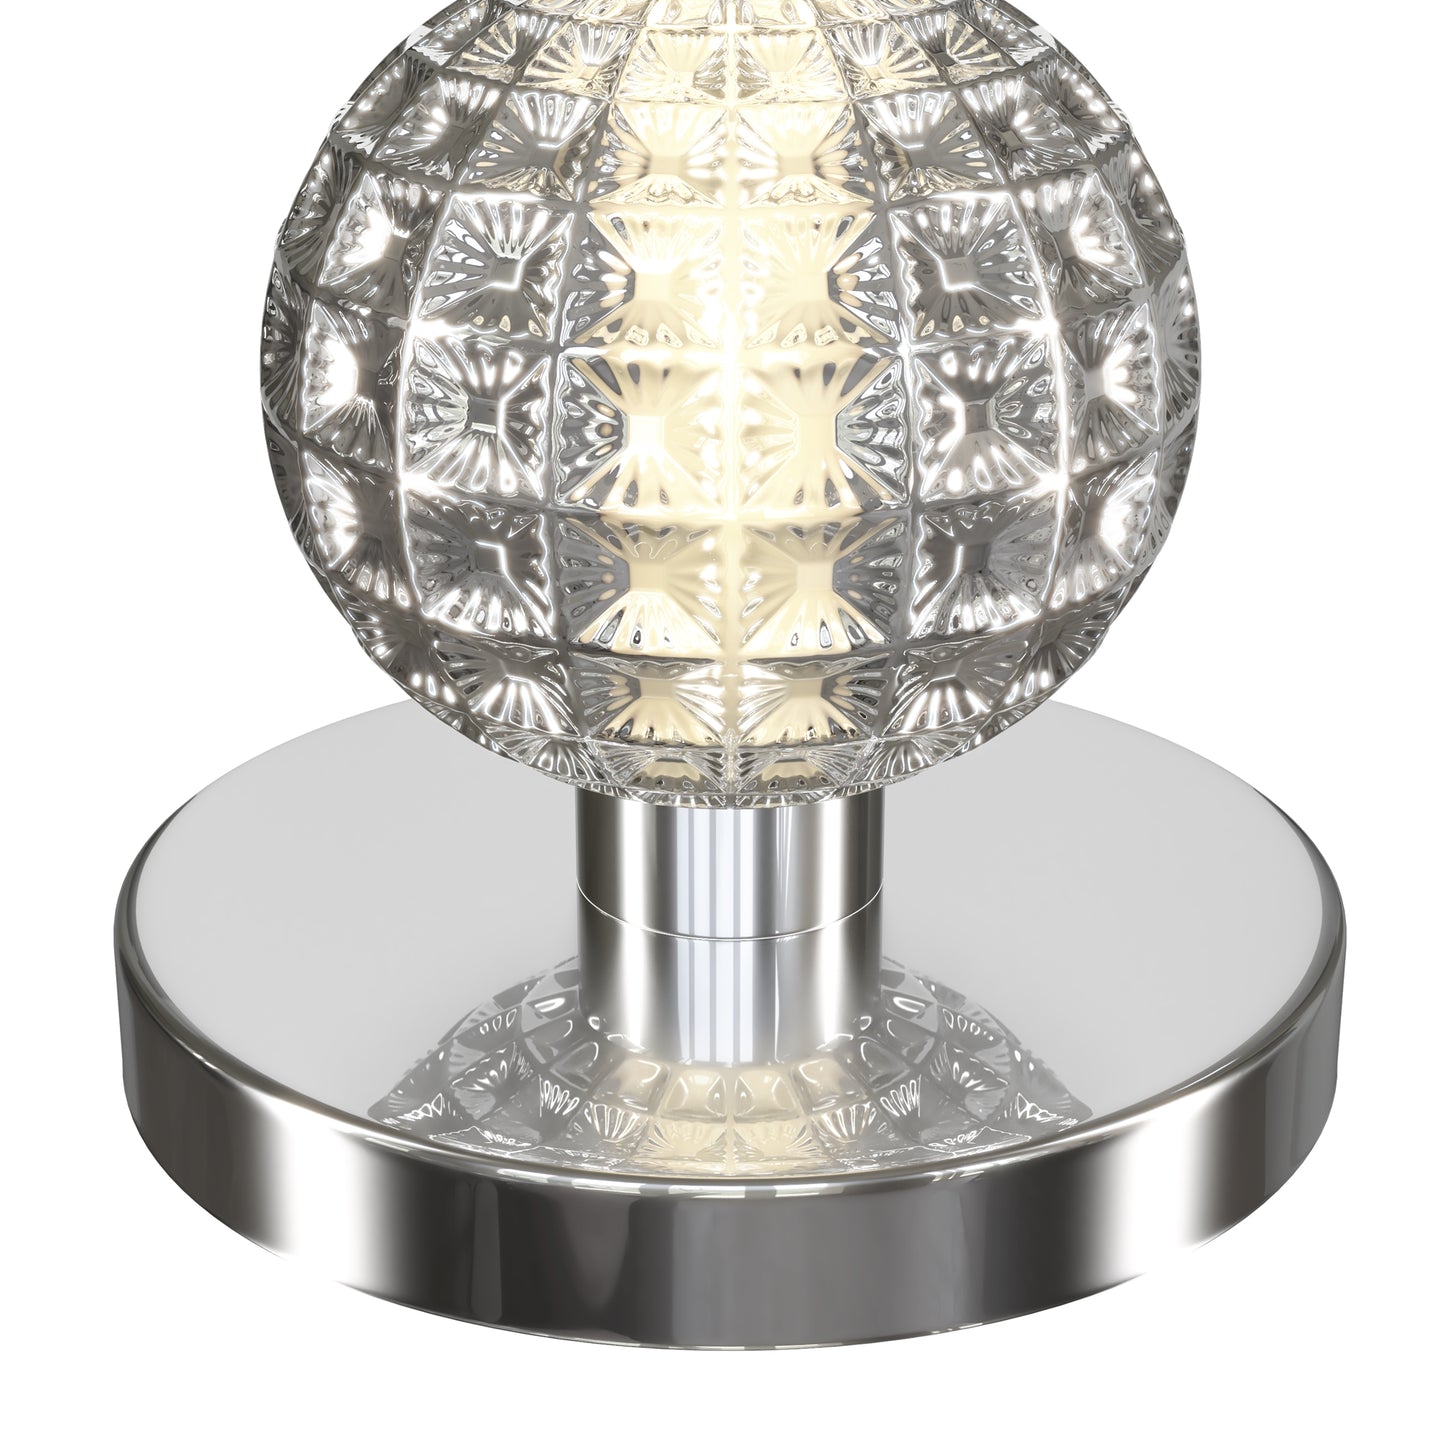 Une Lampe en Verre Souffle compose de 3 globes l'un sur l'autre.